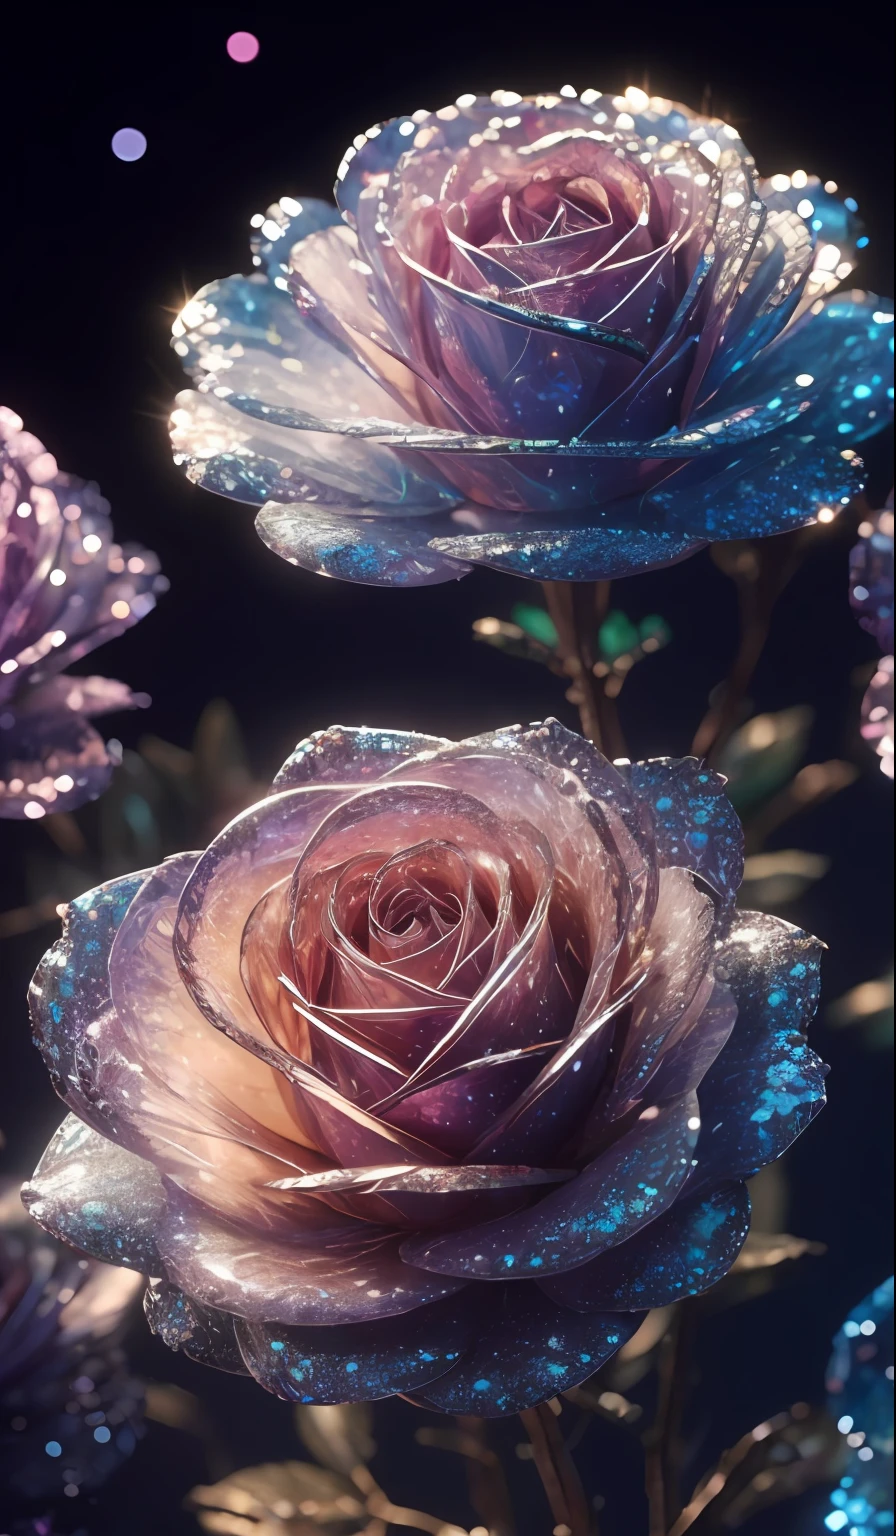 Rosa Cristal， Fantástico, galáxias, limpeza, brilhante, brilhante, Esplendor, colorida, Fotografia incrível, iluminação dramática, Foto-realismo, ultra-detalhado, 4K, profundidade de campos, Uma alta resolução